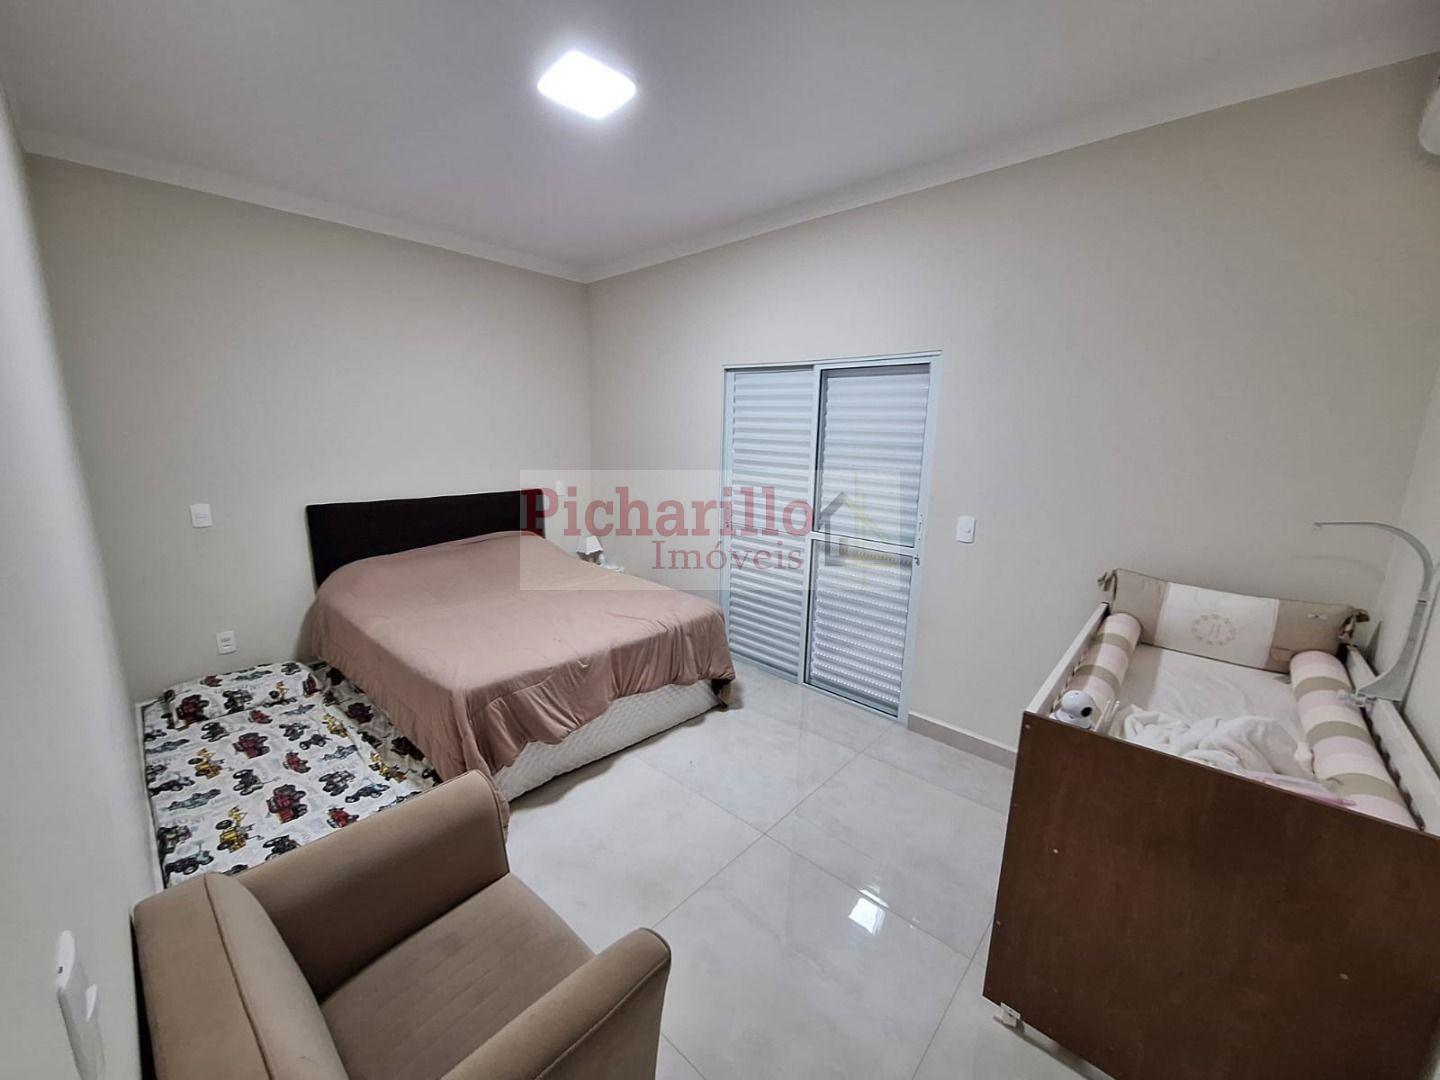 Casa com 3 dormitórios (1 suíte)  à venda, 180 m² - Jardim Nova São Carlos - São Carlos/SP